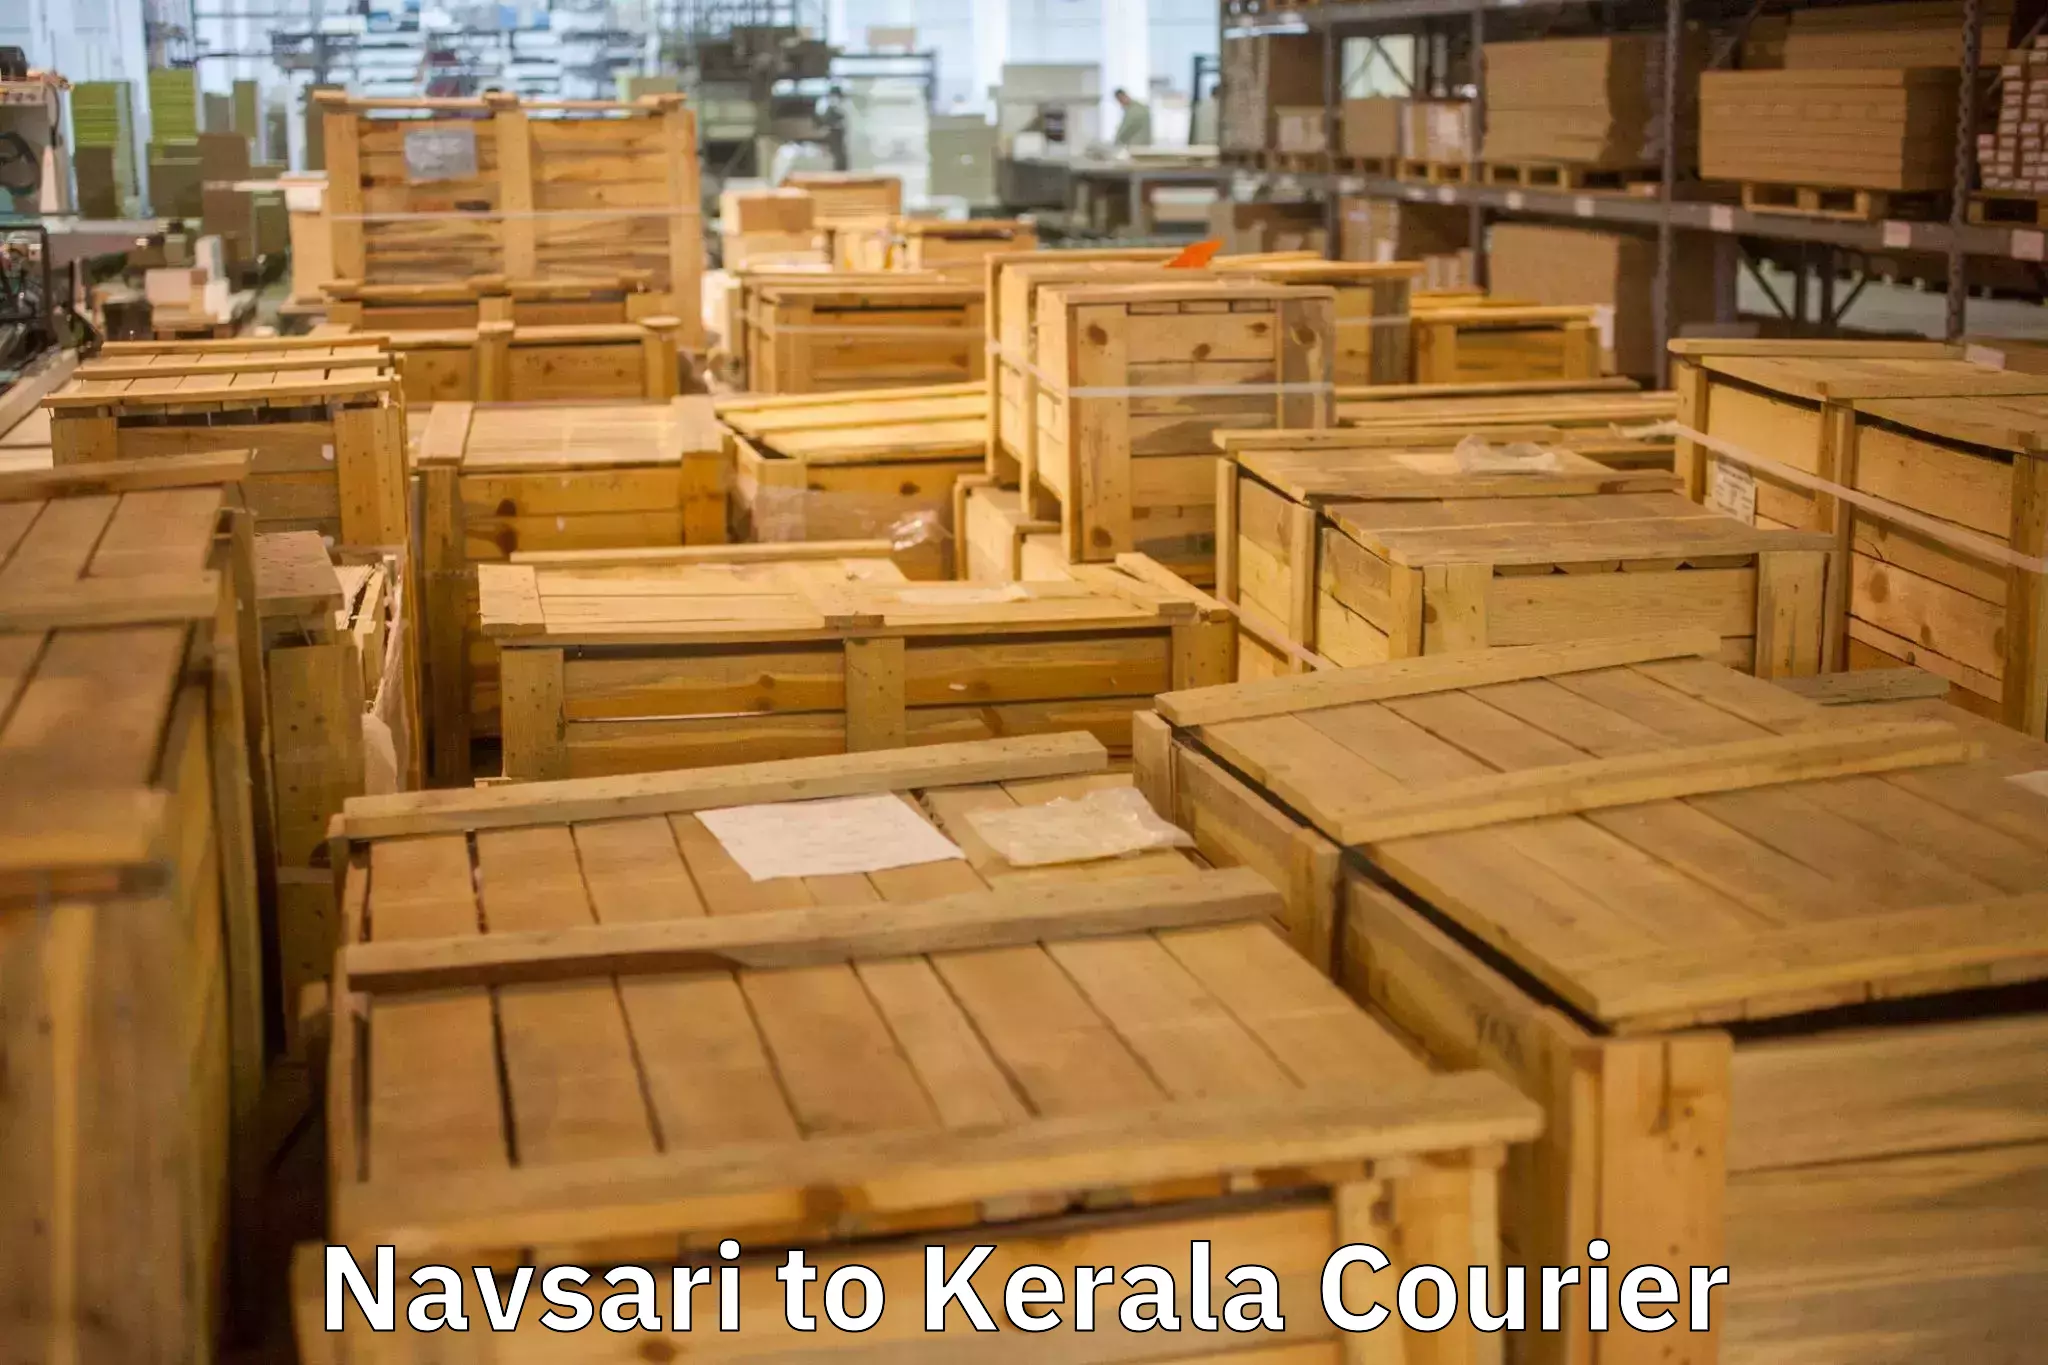 Furniture transport experts Navsari to Punalur